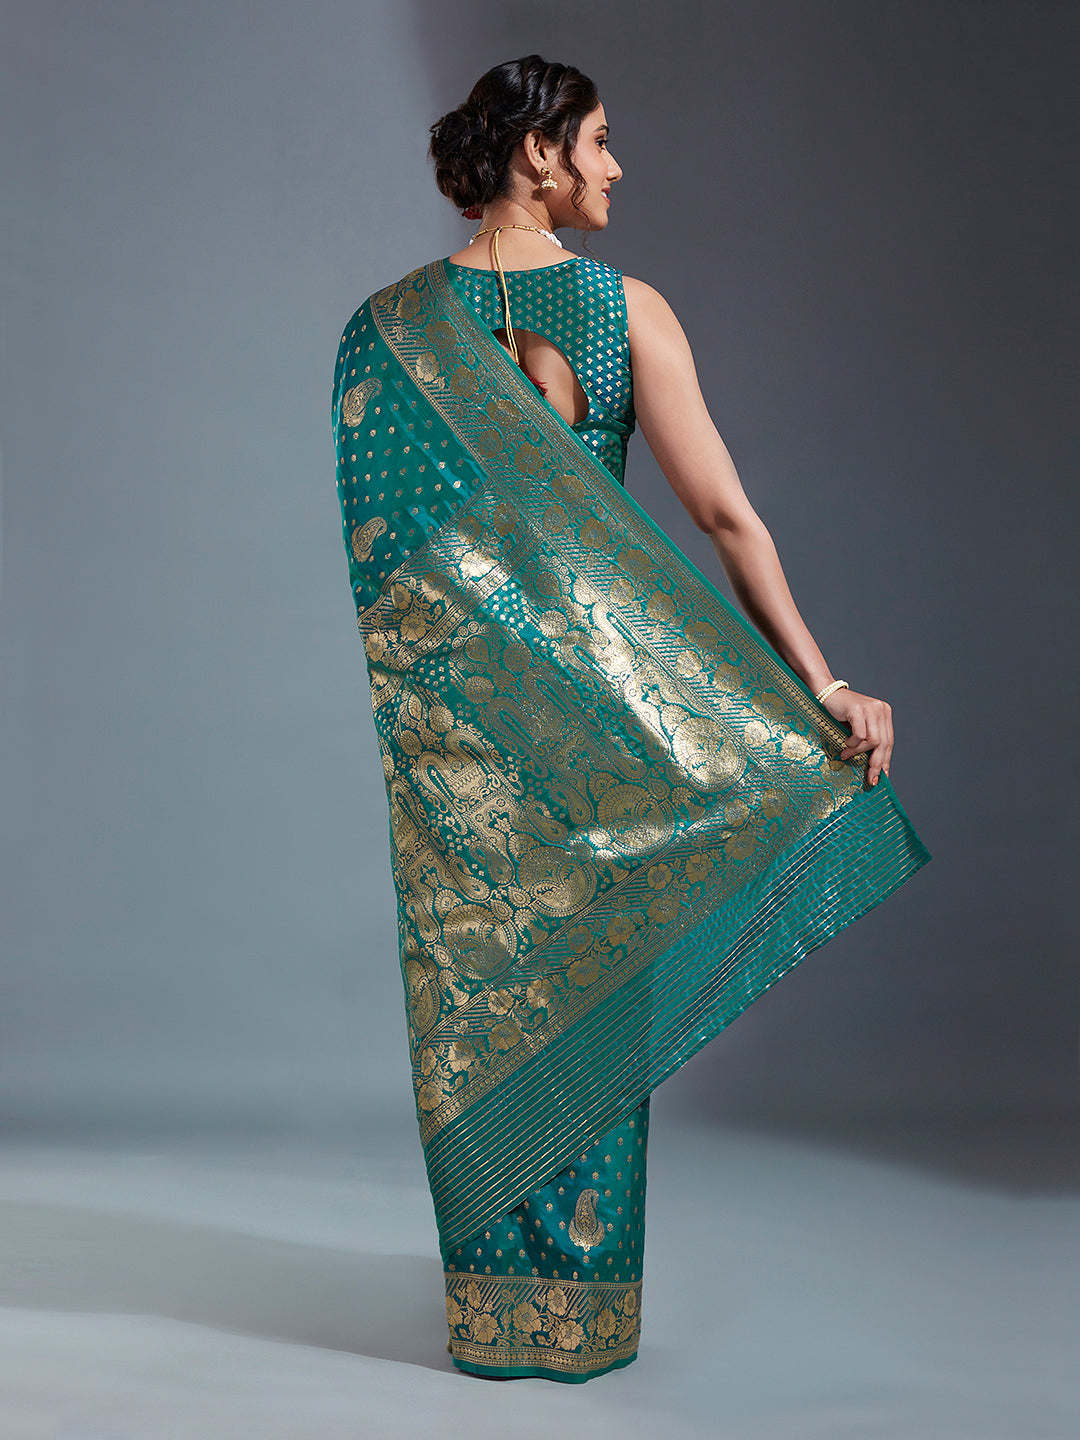 Women's Teal & Gold Cotton Silk Paisley Zari With Beautiful Ethnic Motifs Banarasi Saree - Royal Dwells